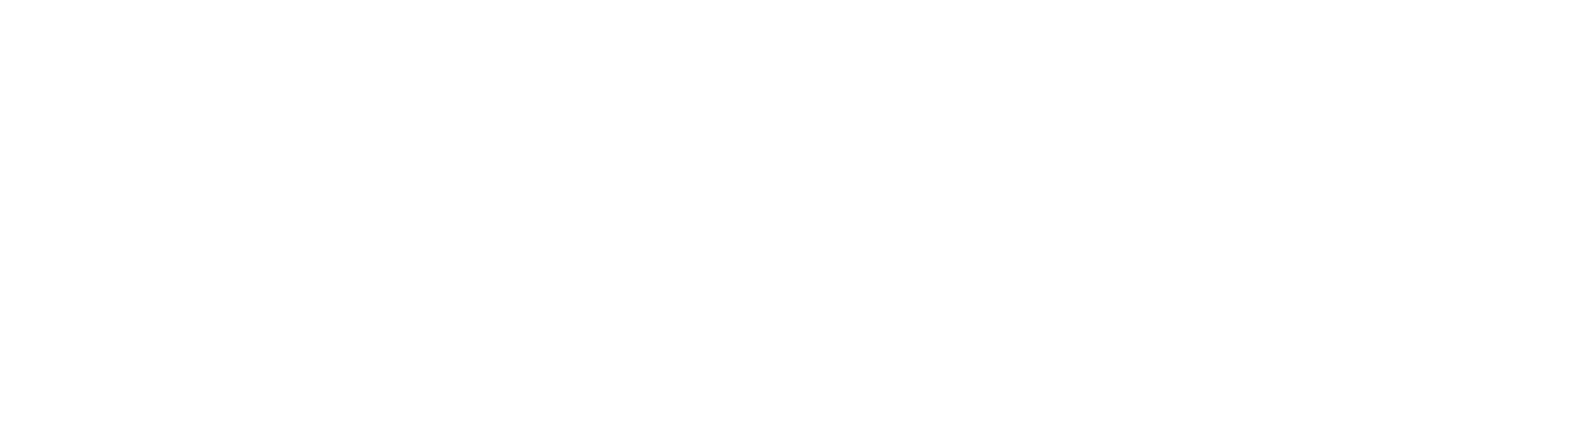 edenor logo large for dark backgrounds (transparent PNG)